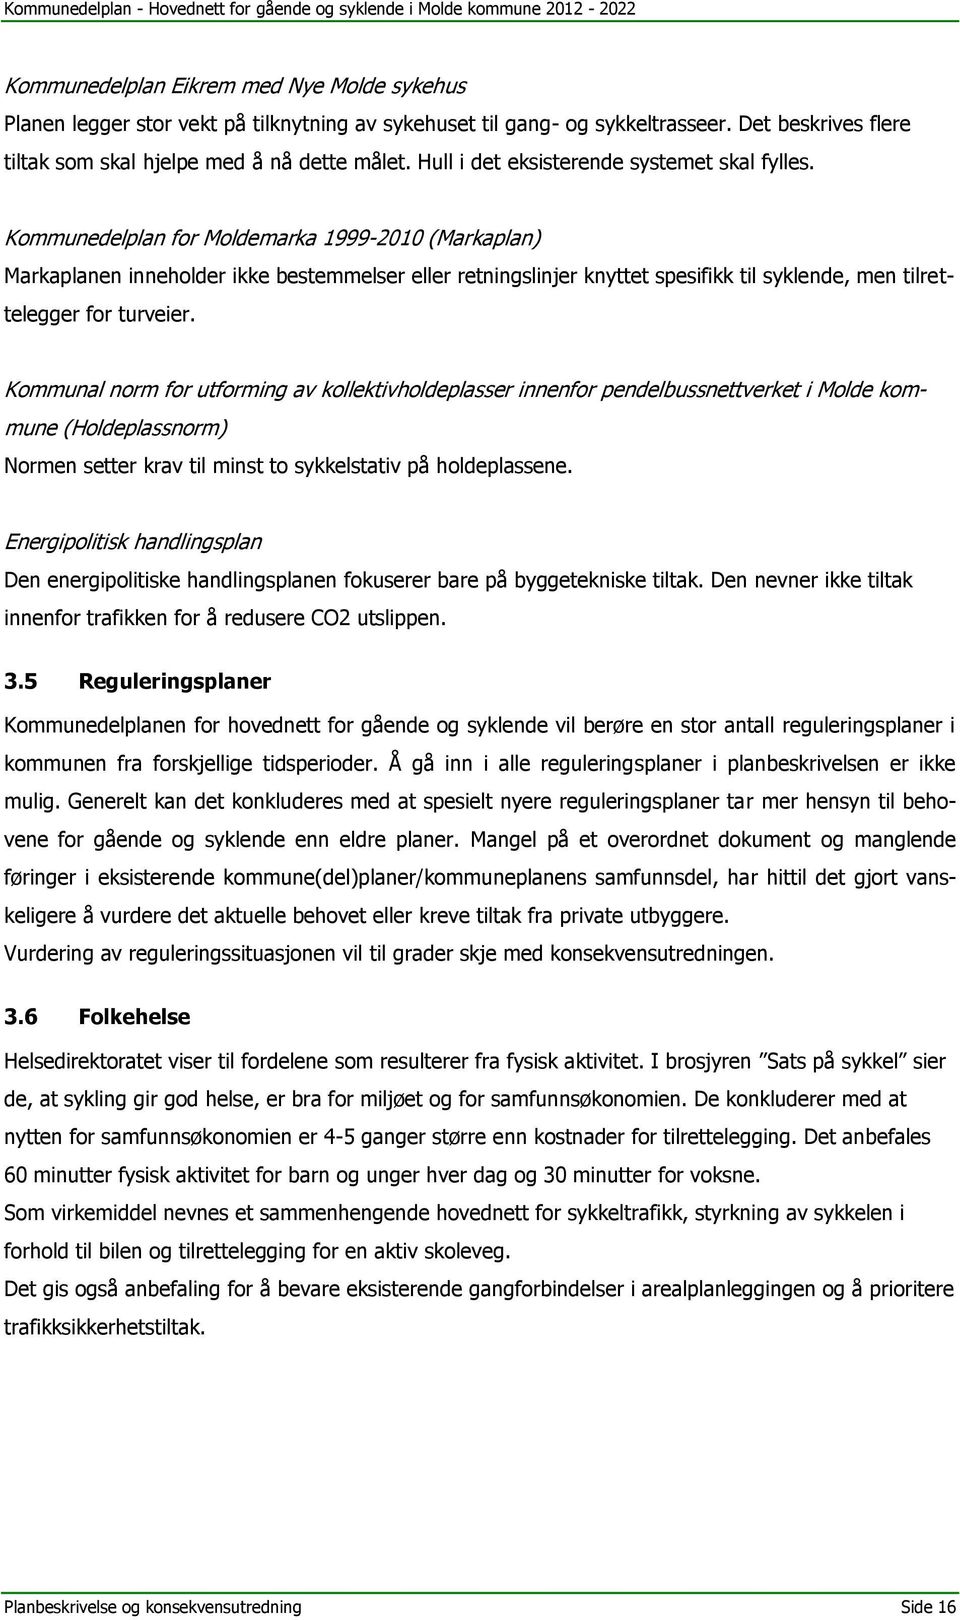 Kommunedelplan for Moldemarka 1999-2010 (Markaplan) Markaplanen inneholder ikke bestemmelser eller retningslinjer knyttet spesifikk til syklende, men tilrettelegger for turveier.